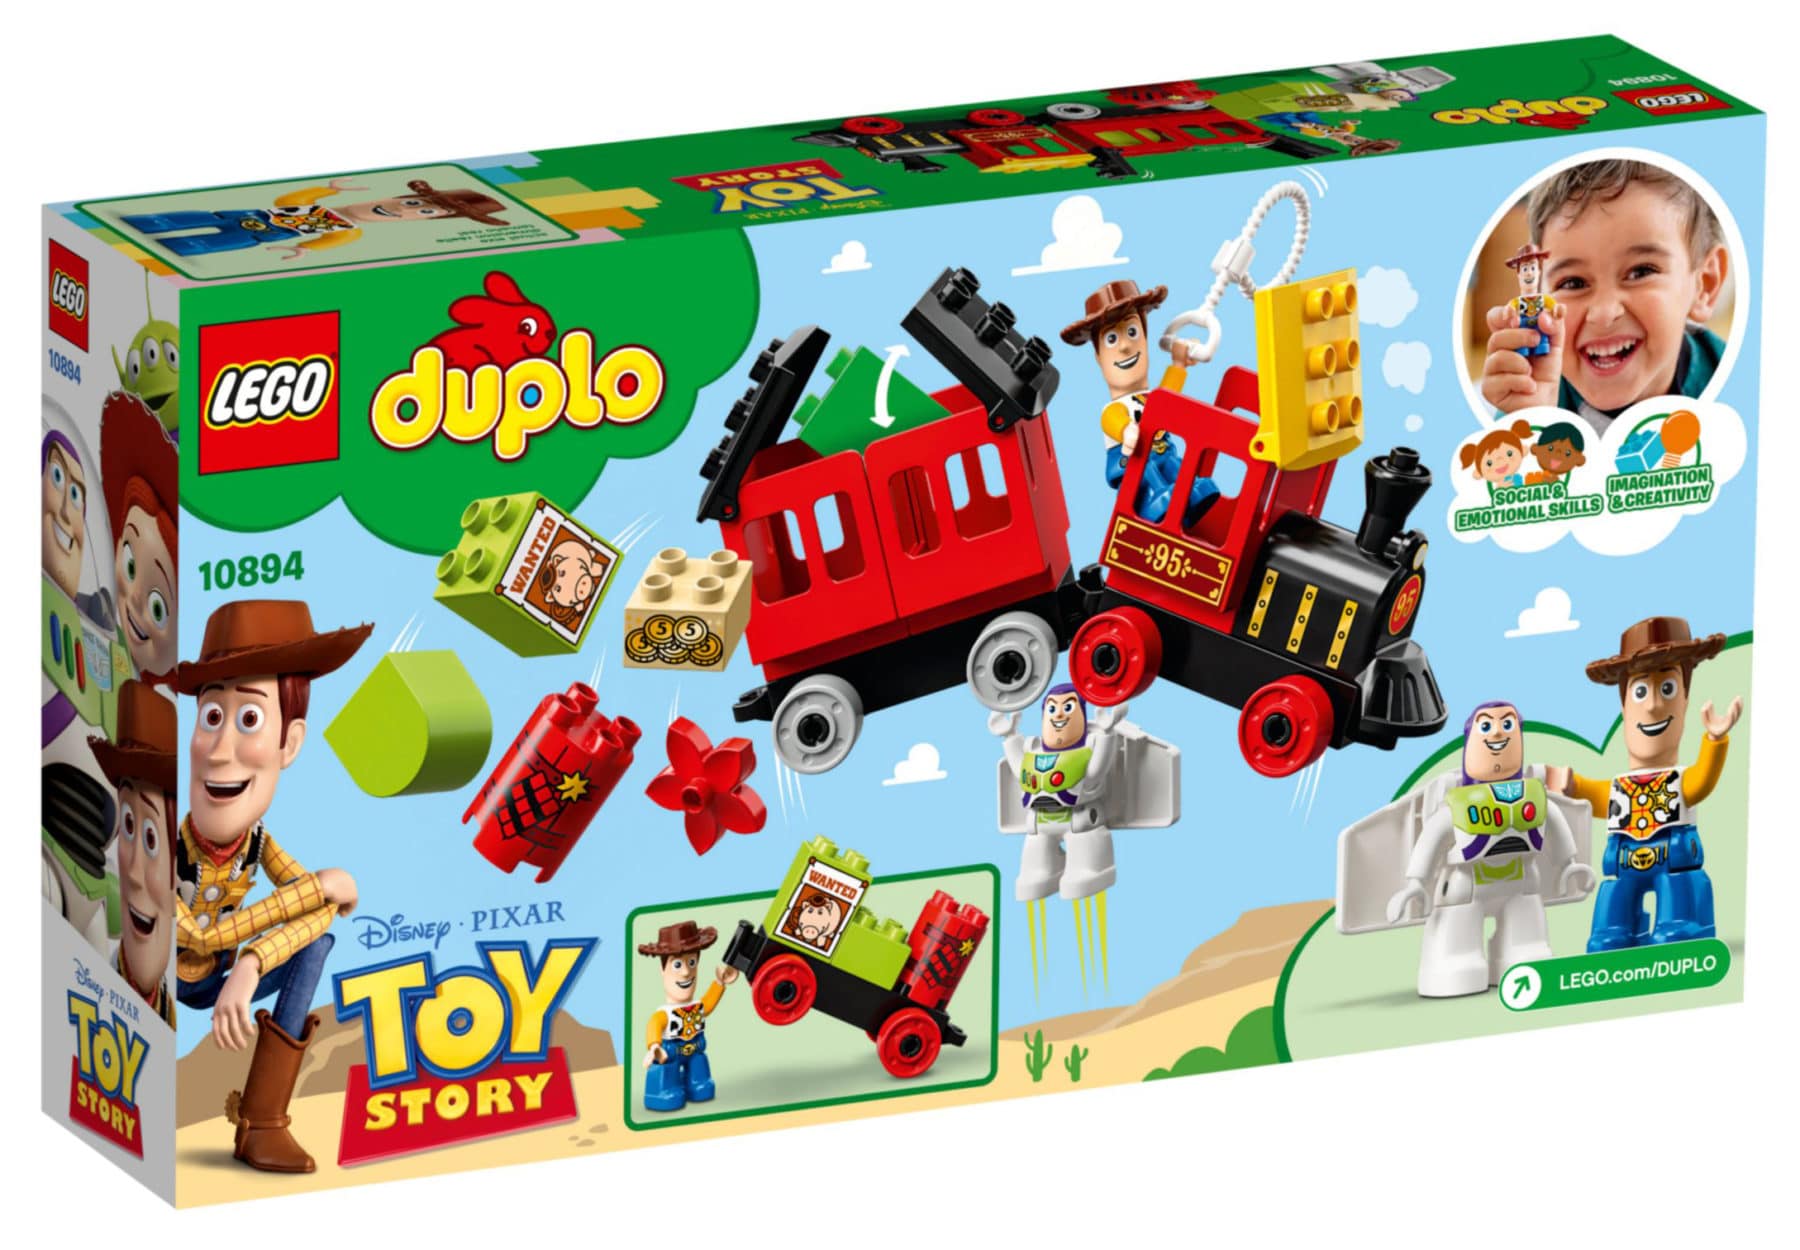 LEGO Duplo 10894 Toy Story Zug